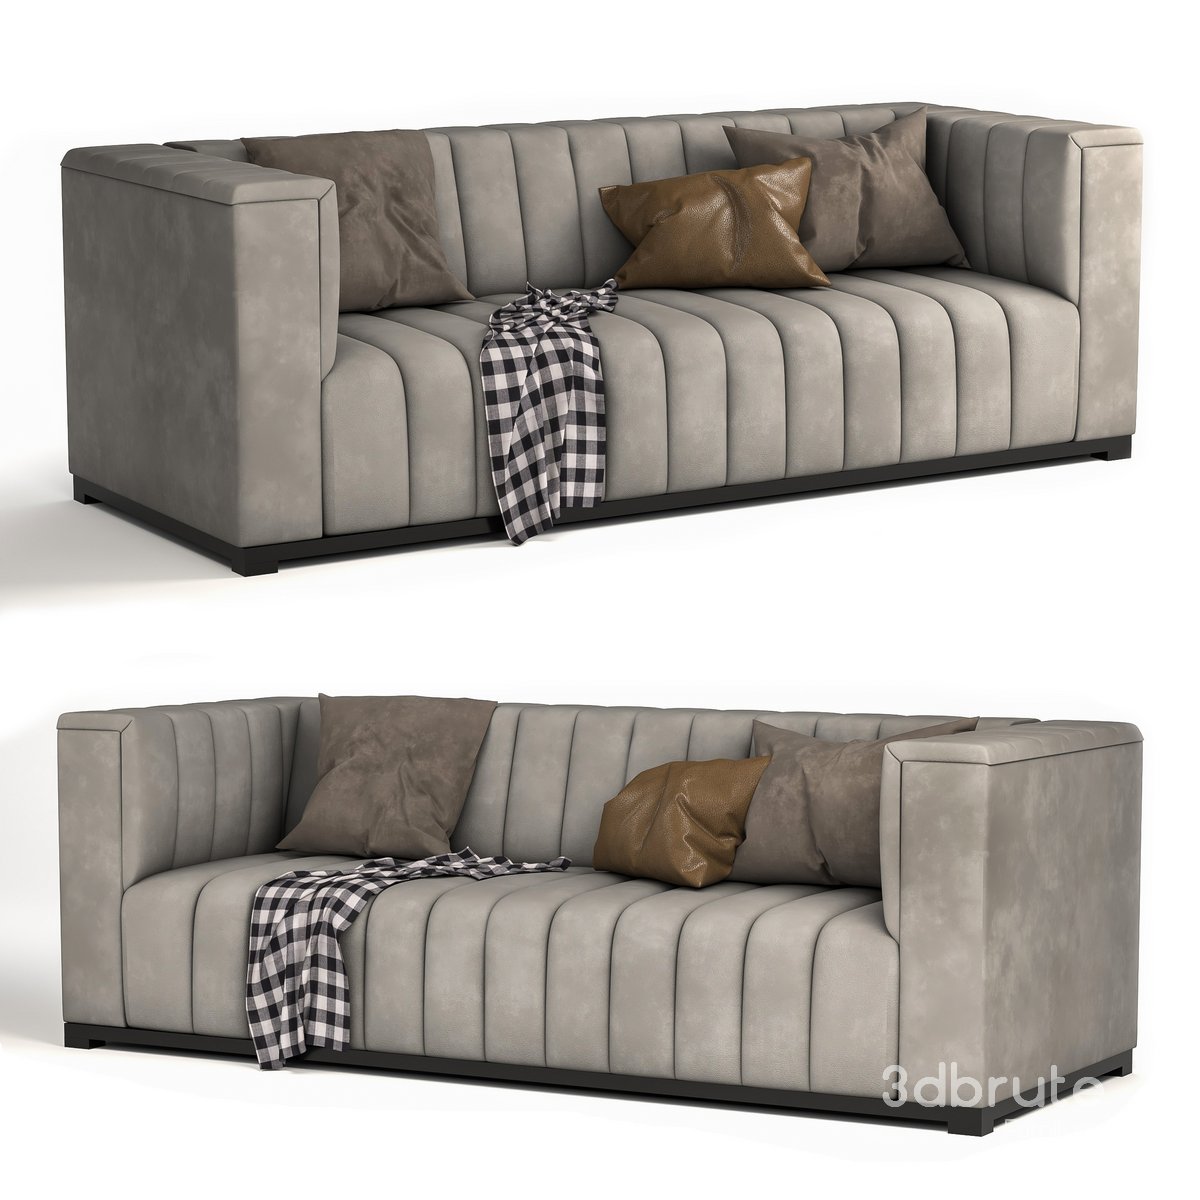 Velvet tufted sofa1 3d model Buy Download 3dbrute